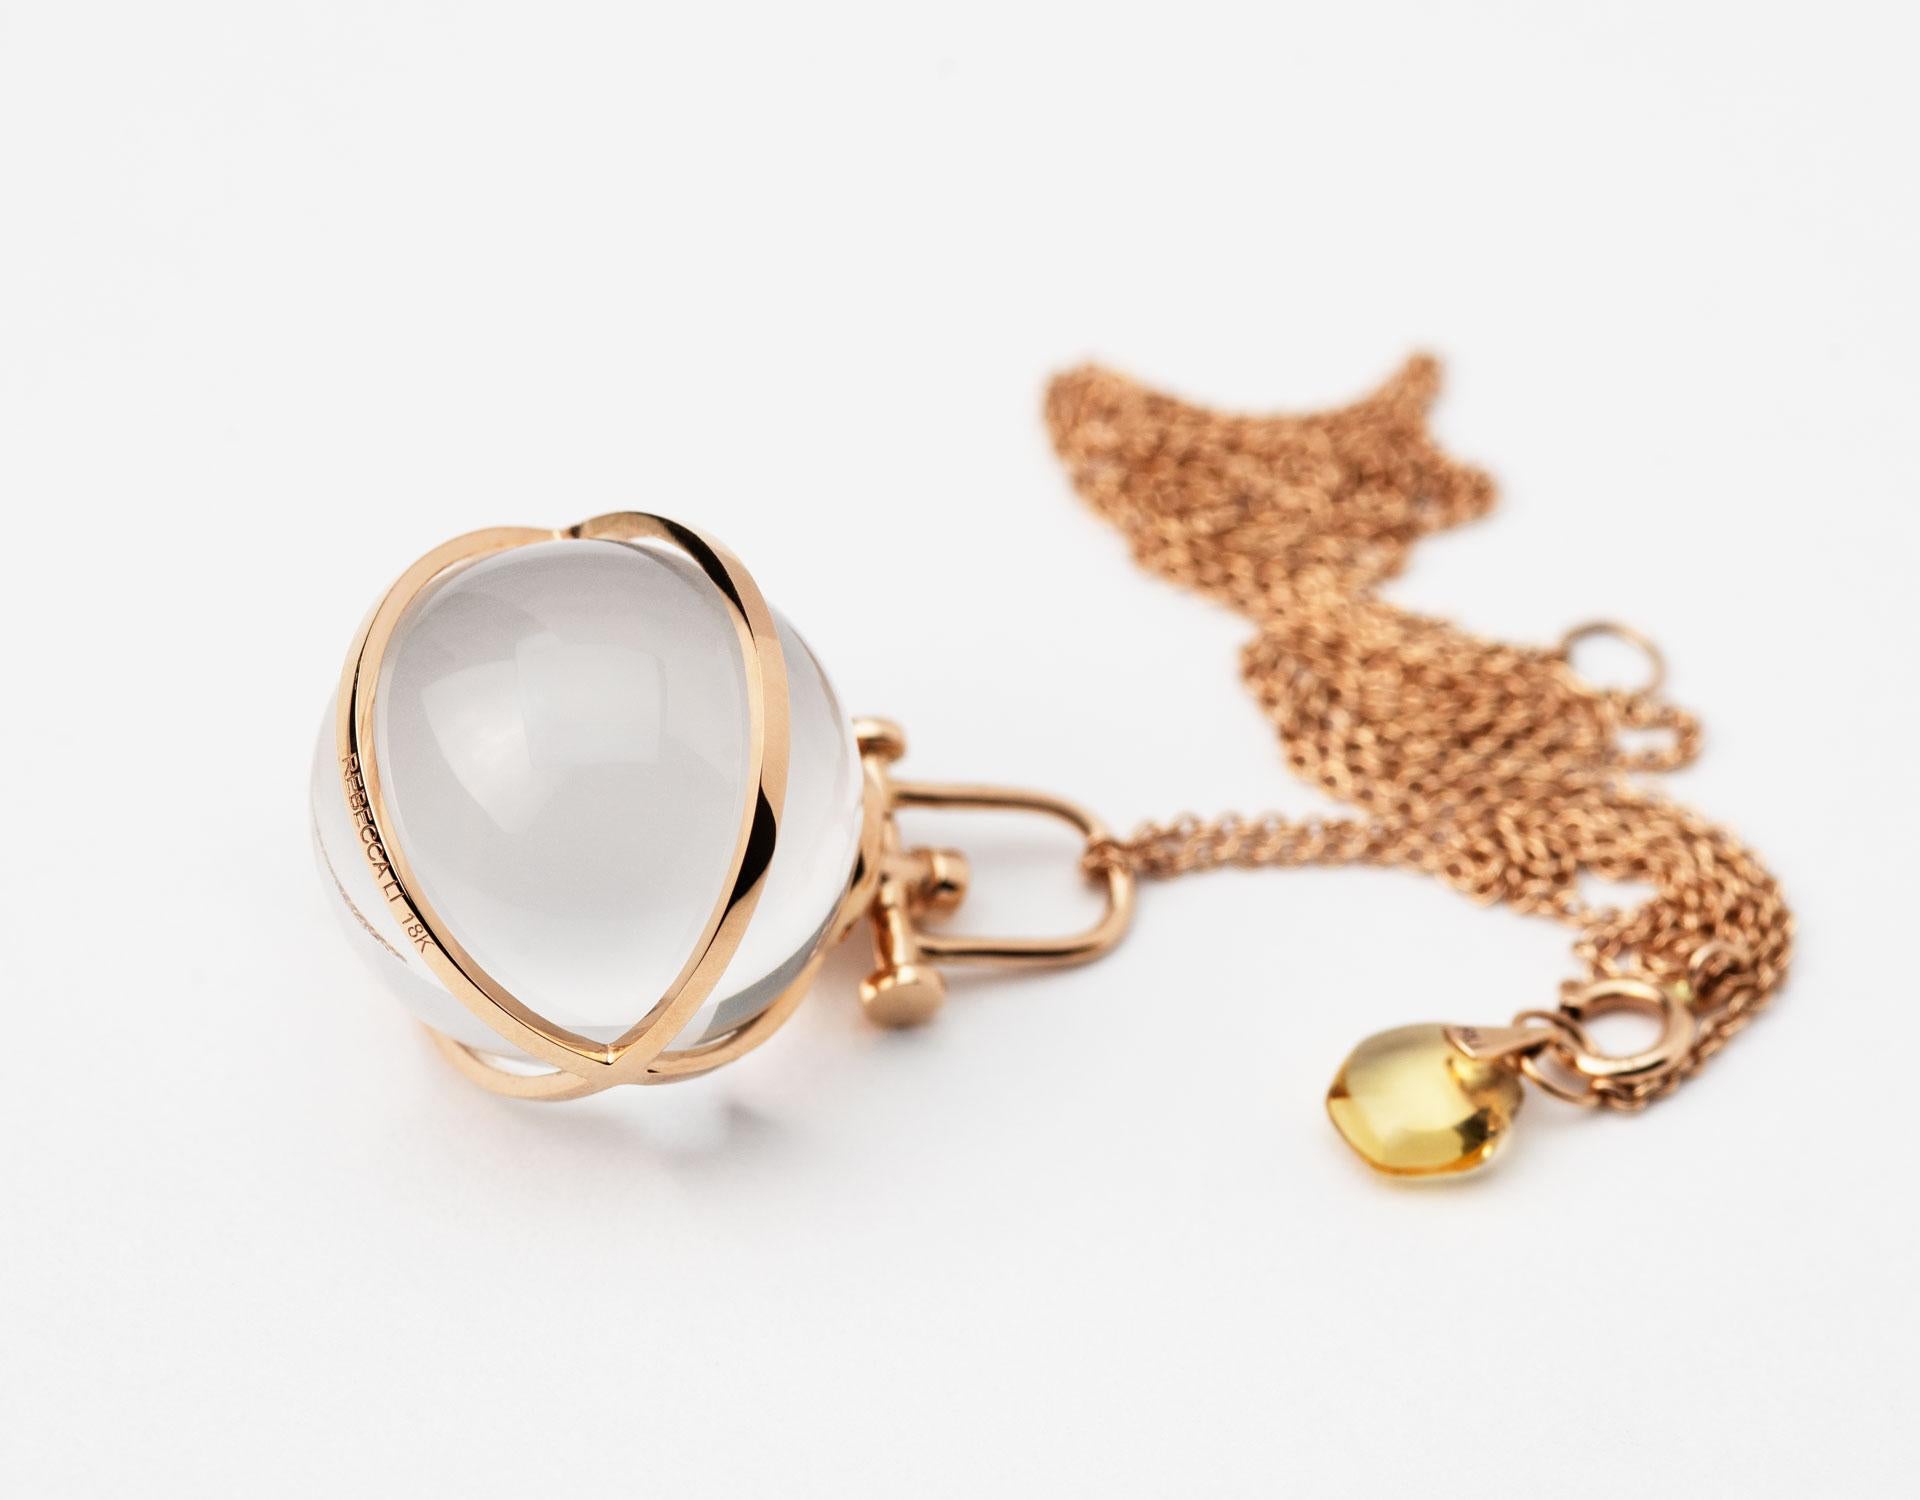 Rebecca Li conçoit Mindfulness. 
Ce collier audacieux en cristal fait partie de sa collection Crystal Orb. Elle croit que les miracles se produisent lorsque nous sommes ouverts d'esprit.
Le cristal de roche signifie manifestation, positivité et